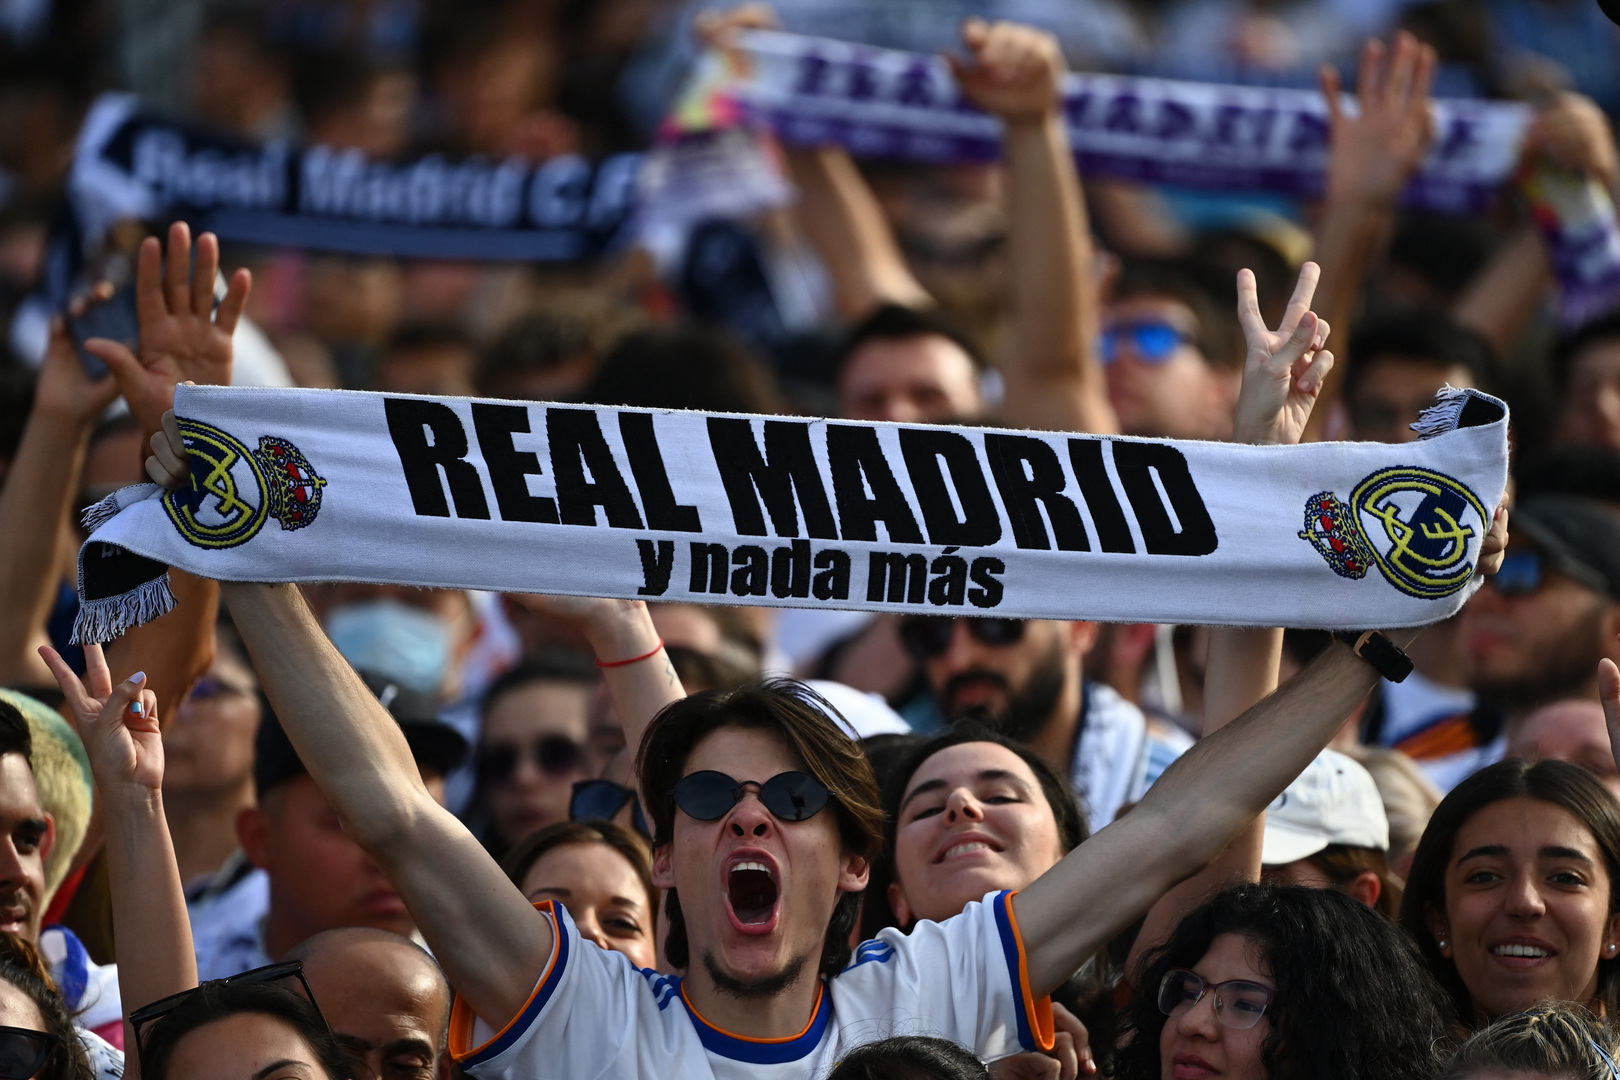 الاتحاد الأوروبي يستفز جماهير ريال مدريد بذكرى مؤلمة (فيديو)